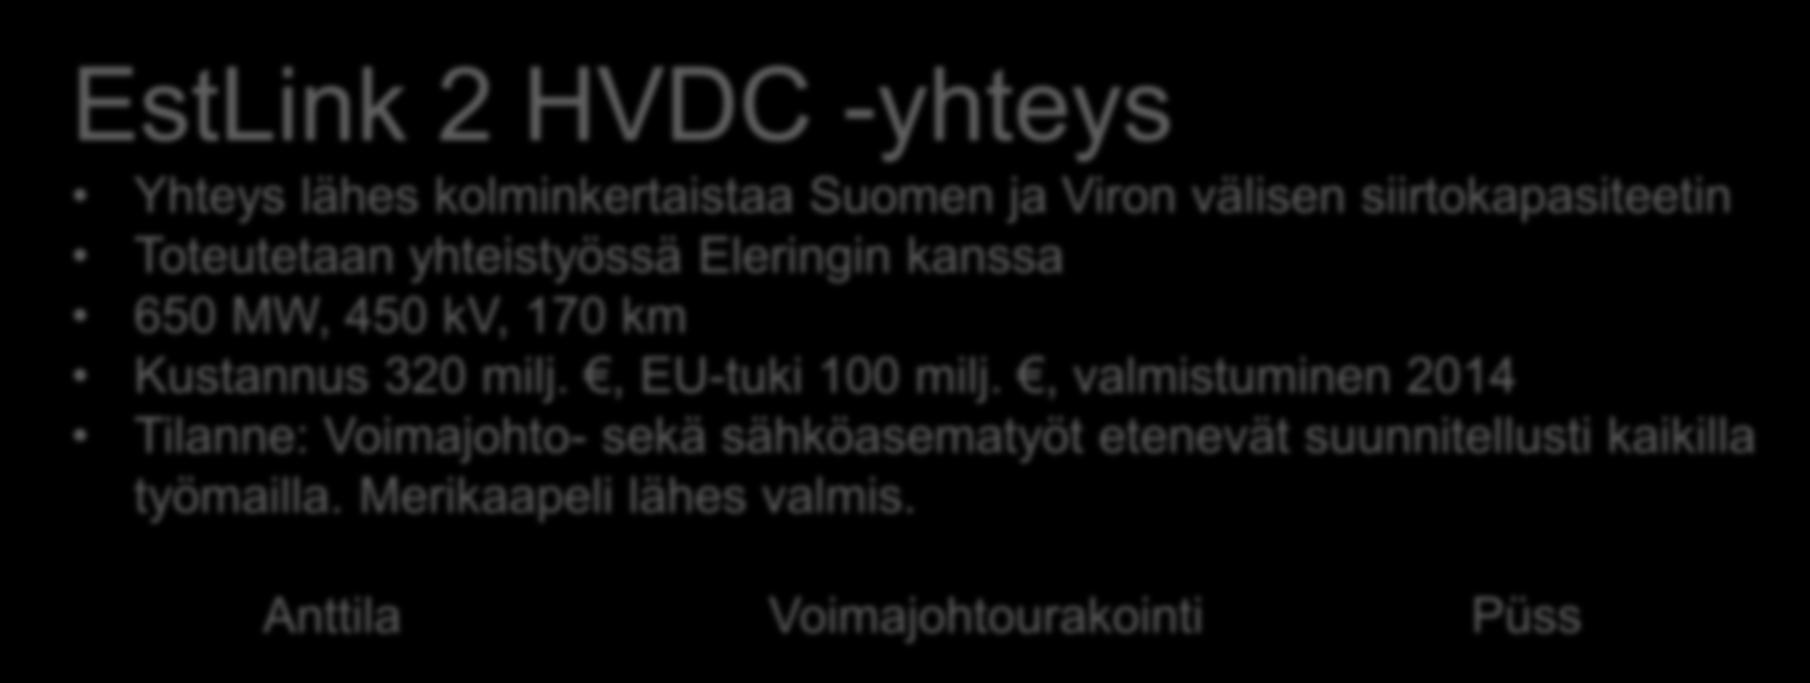 RAKENTEILLA OLEVAT SUURHANKKEET EstLink 2 HVDC -yhteys Yhteys lähes kolminkertaistaa Suomen ja Viron